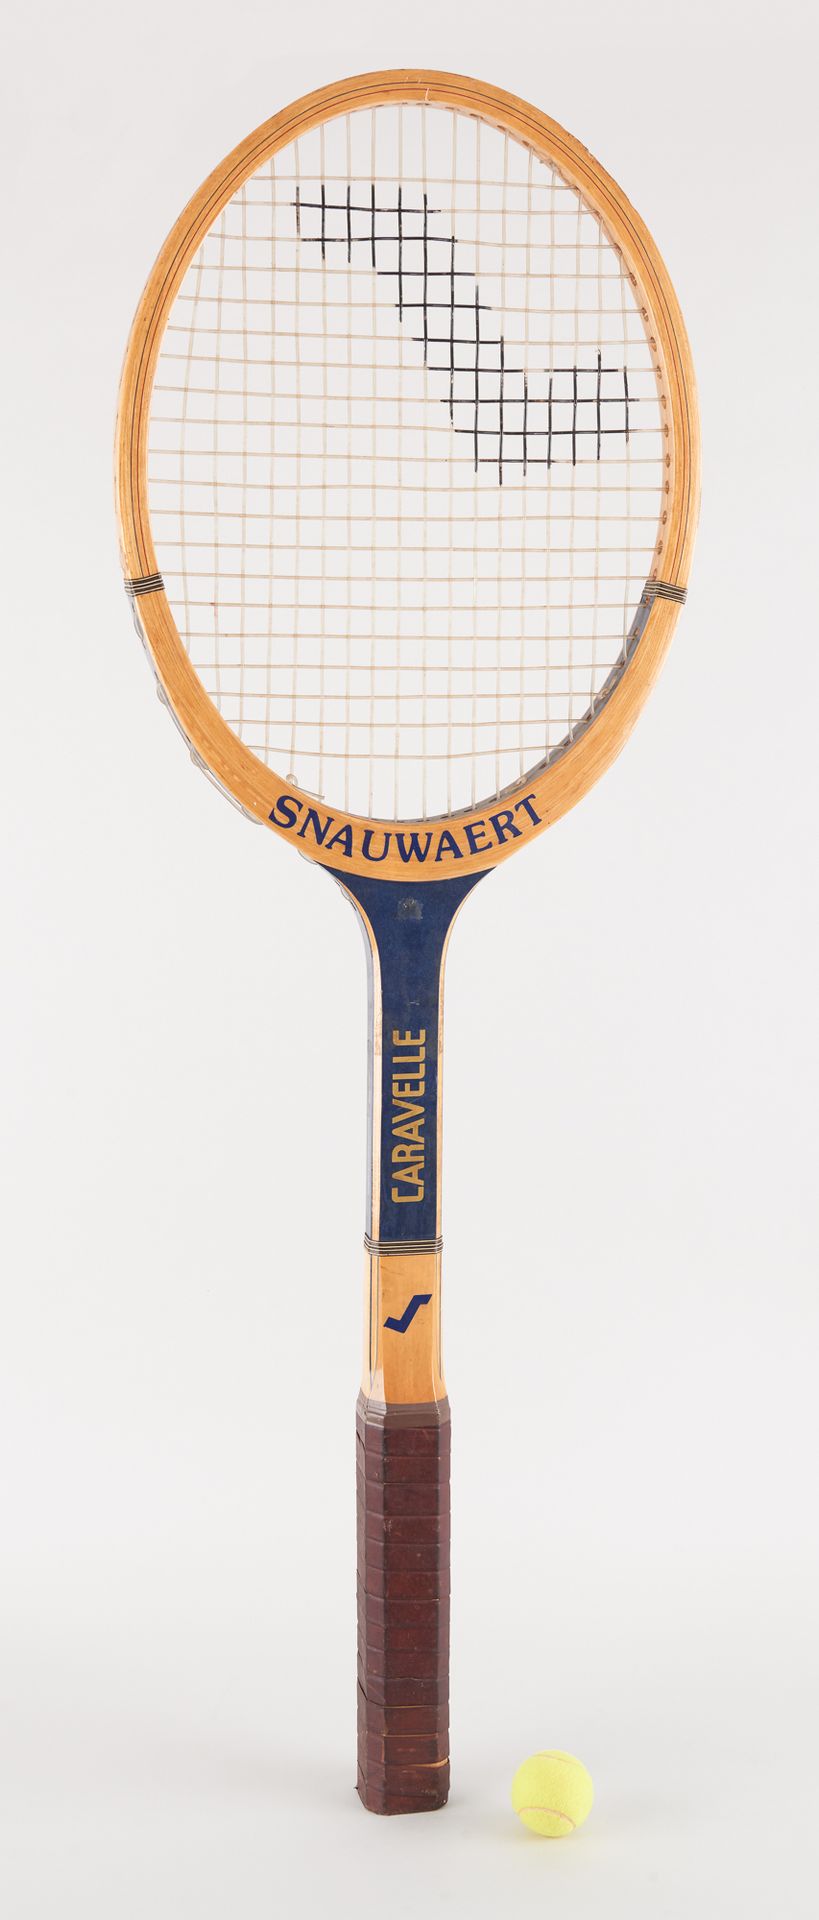 Snauwaert. Objet d'Art: Promotional tennis racket.

Snauwaert brand, model "Cara&hellip;